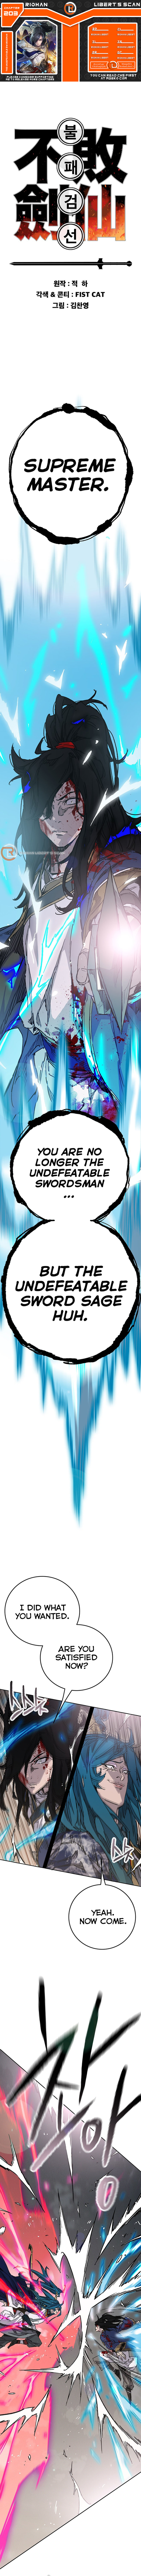 read The Undefeatable Swordsman  Chapter 203 Manga Online Free at Mangabuddy, MangaNato,Manhwatop | MangaSo.com